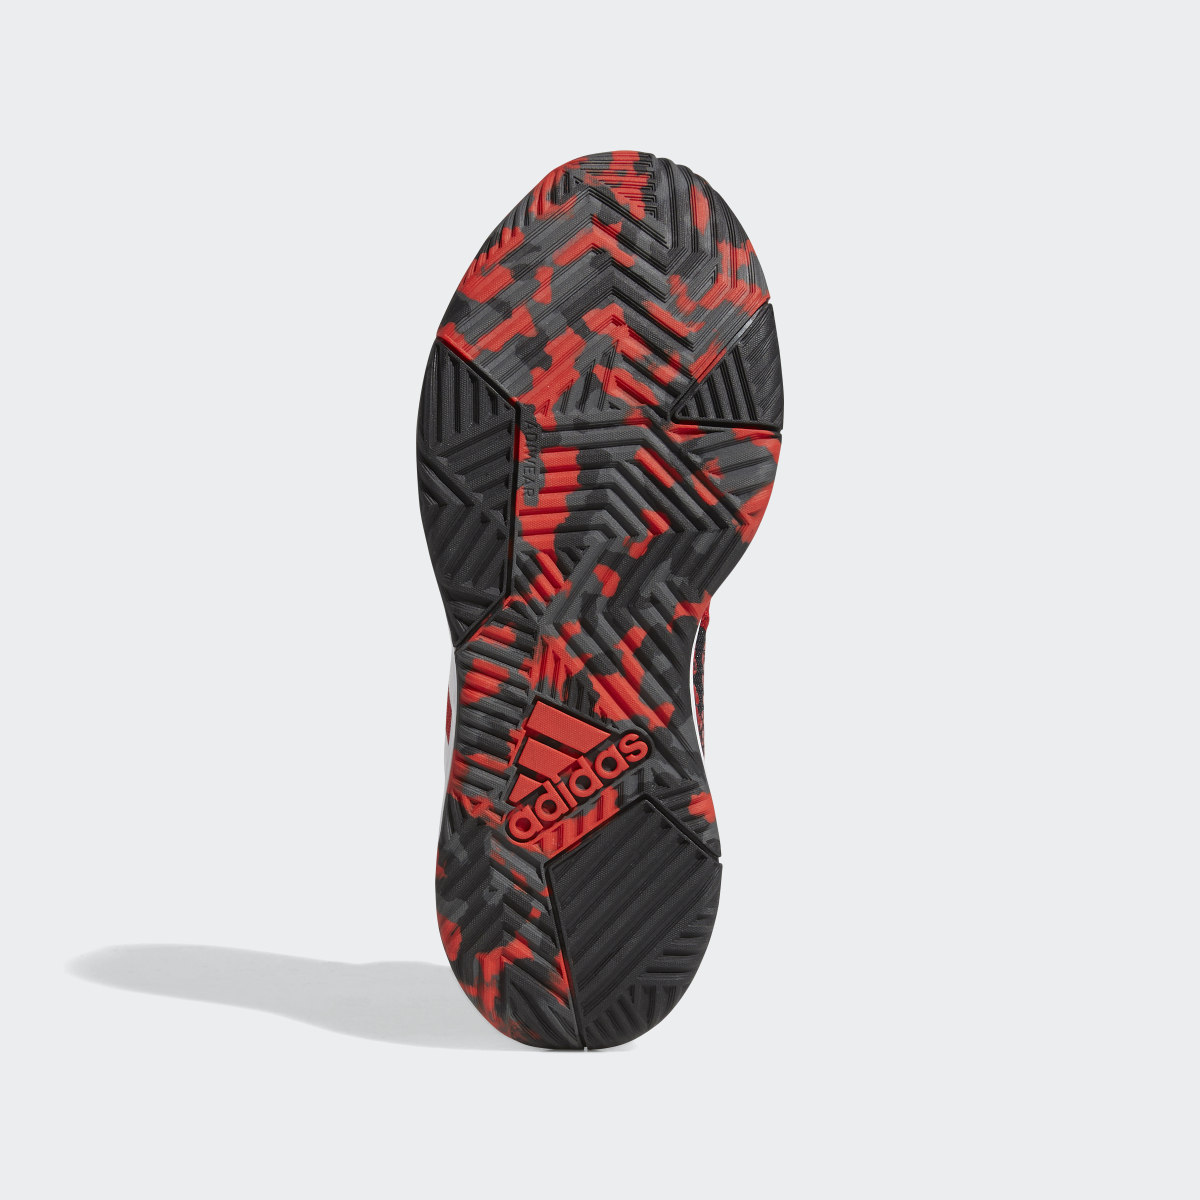 Adidas Ownthegame Ayakkabı. 4